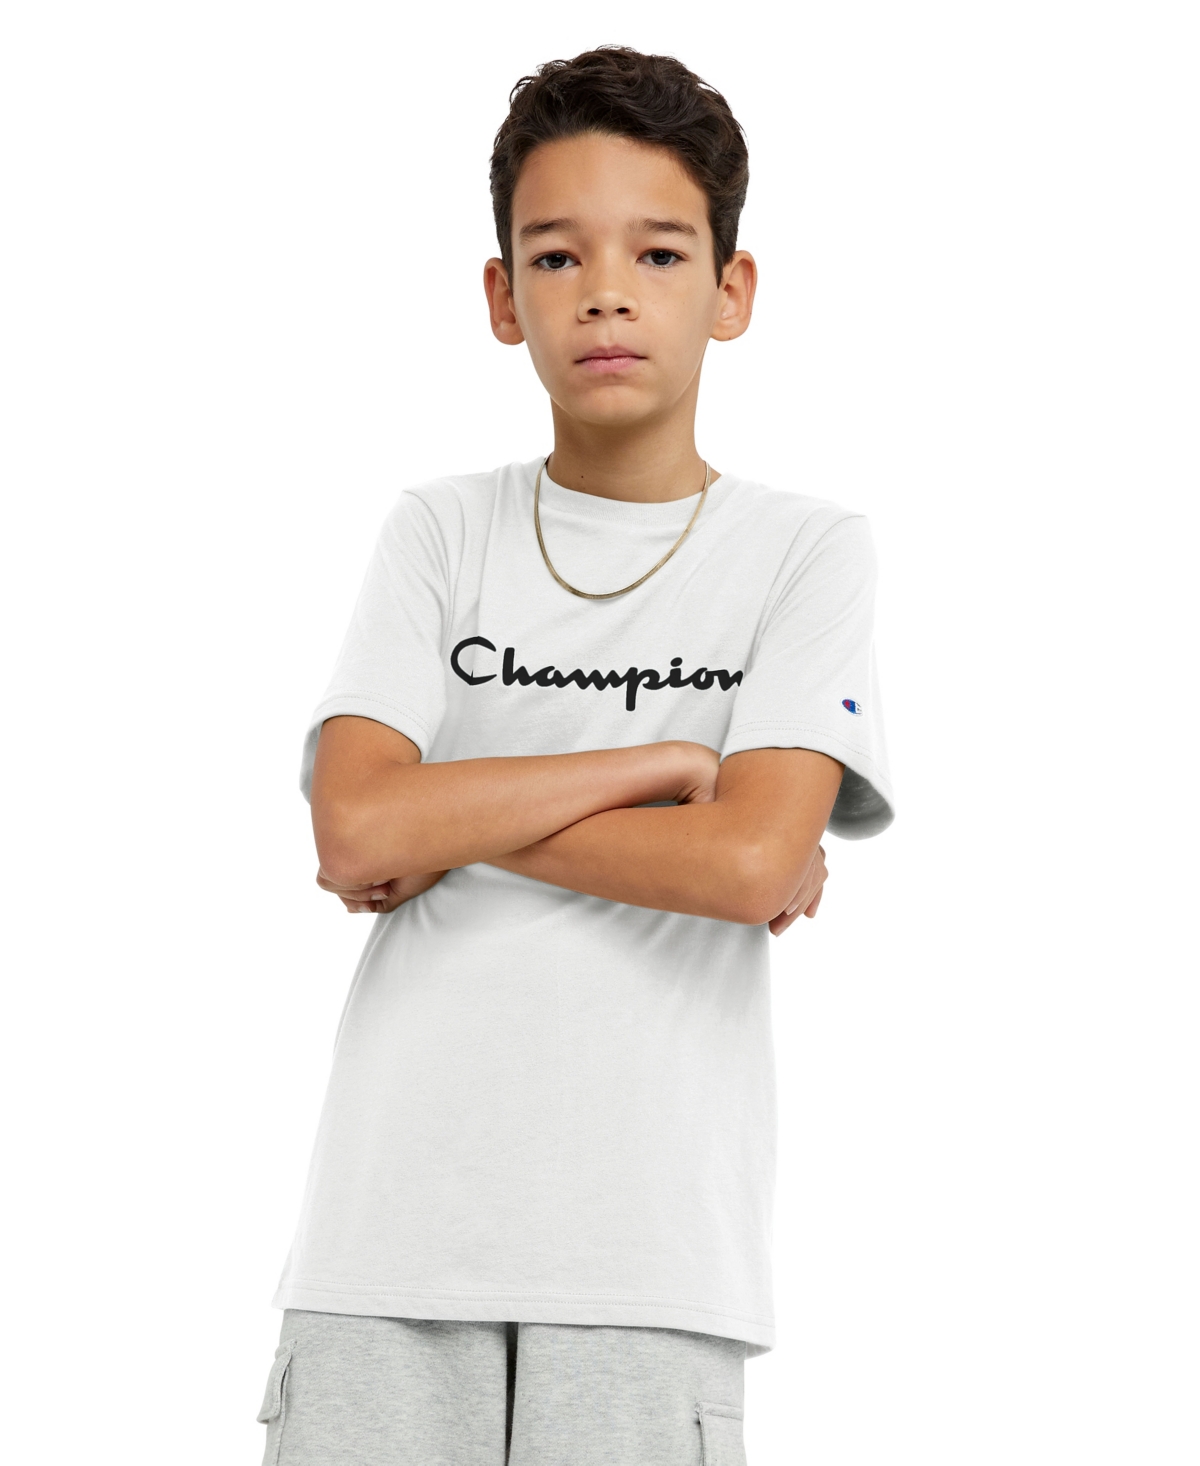 Champion Kids' Little Boys Short Sleeve T-shirt In White